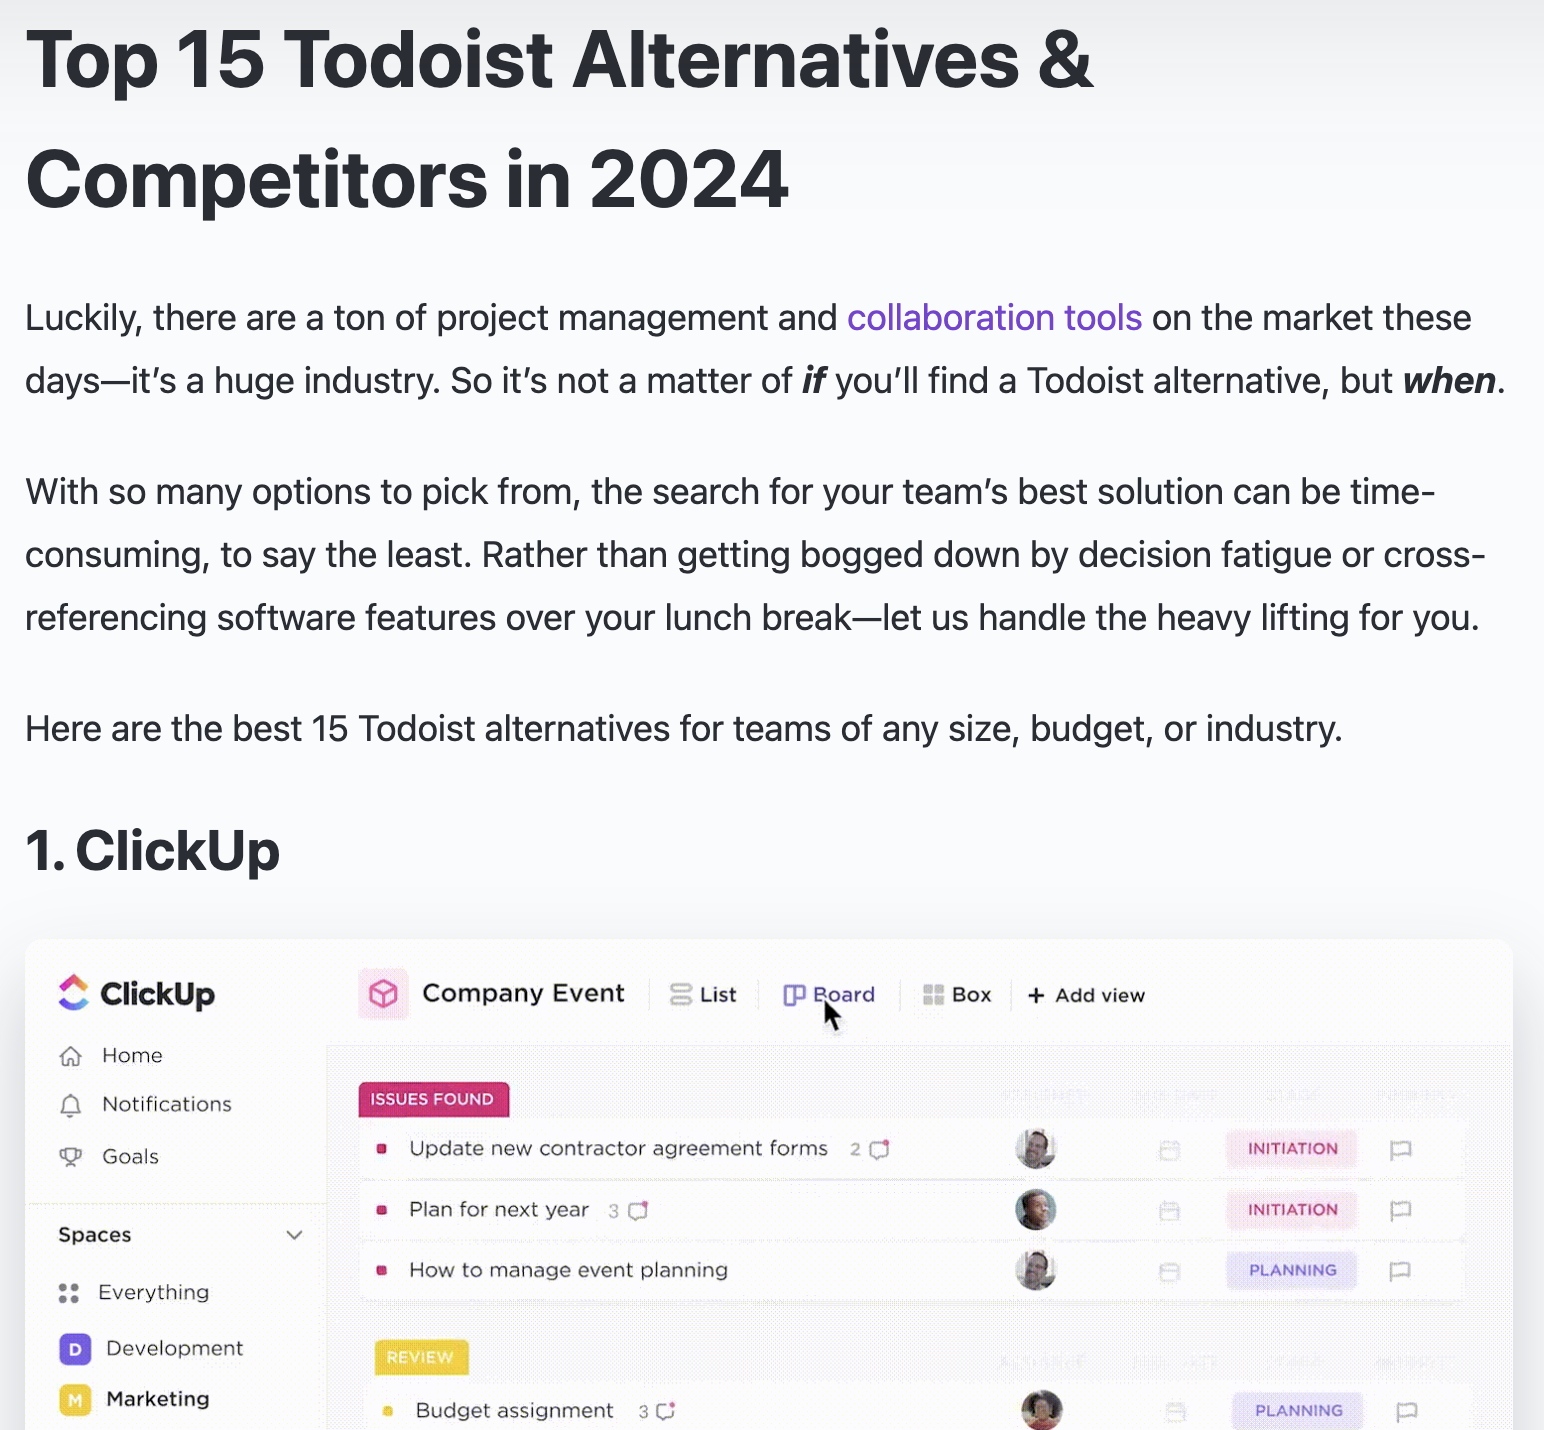 amenwerkingshulpmiddelen, beginnend met ClickUp als eerste alternatief voor Todoist. De interface van ClickUp wordt getoond met verschillende taken en projectbeheeropties.